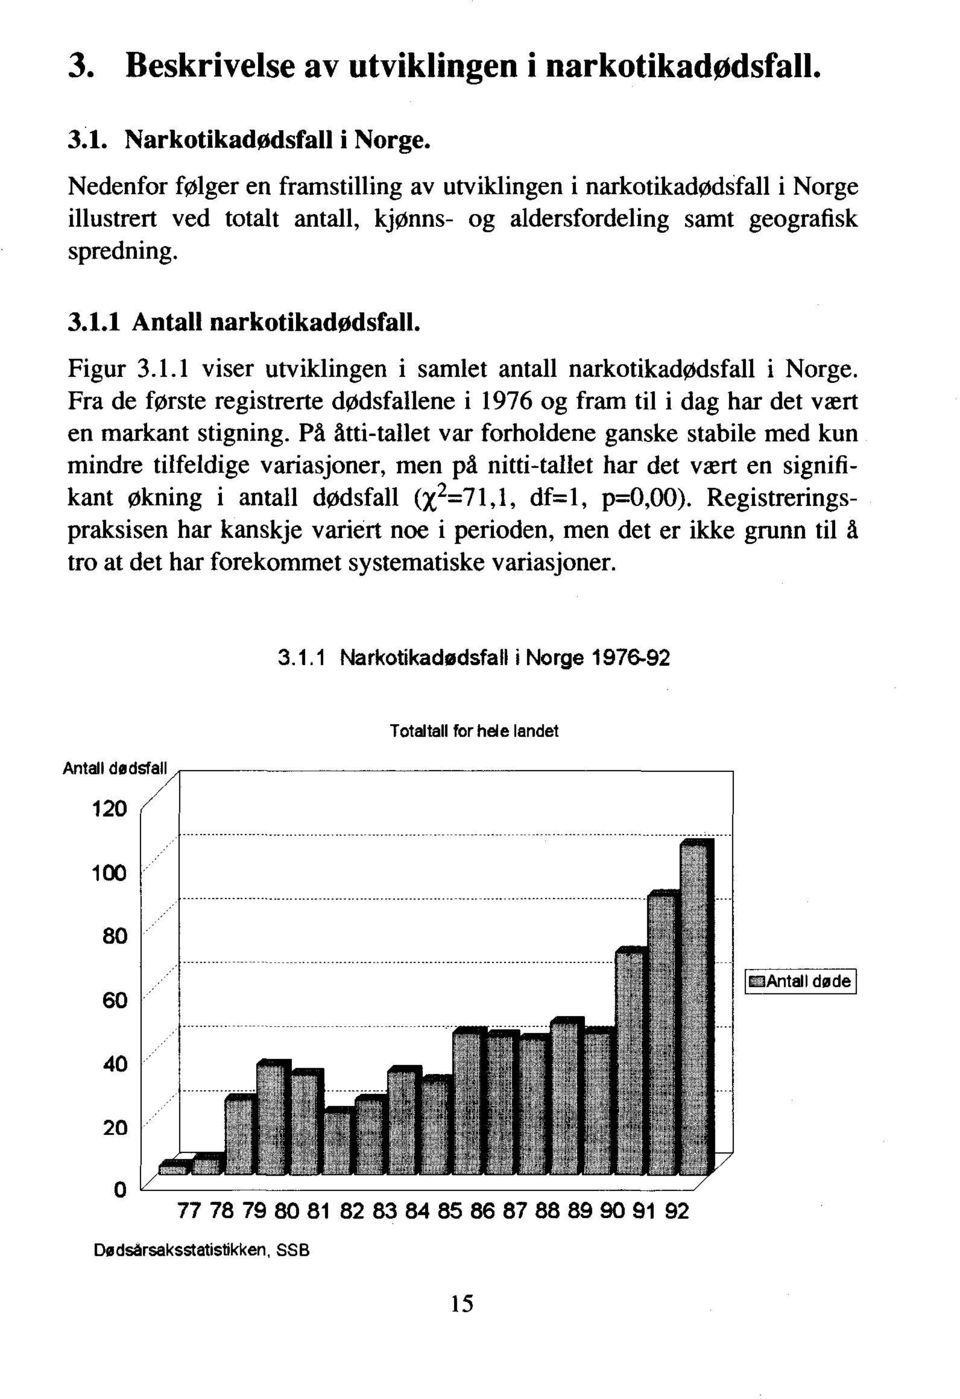 1.1 viser utviklingen i samlet antall narkotikadødsfall i Norge. Fra de første registrerte dødsfallene i 1976 og fram til i dag har det vært en markant stigning.